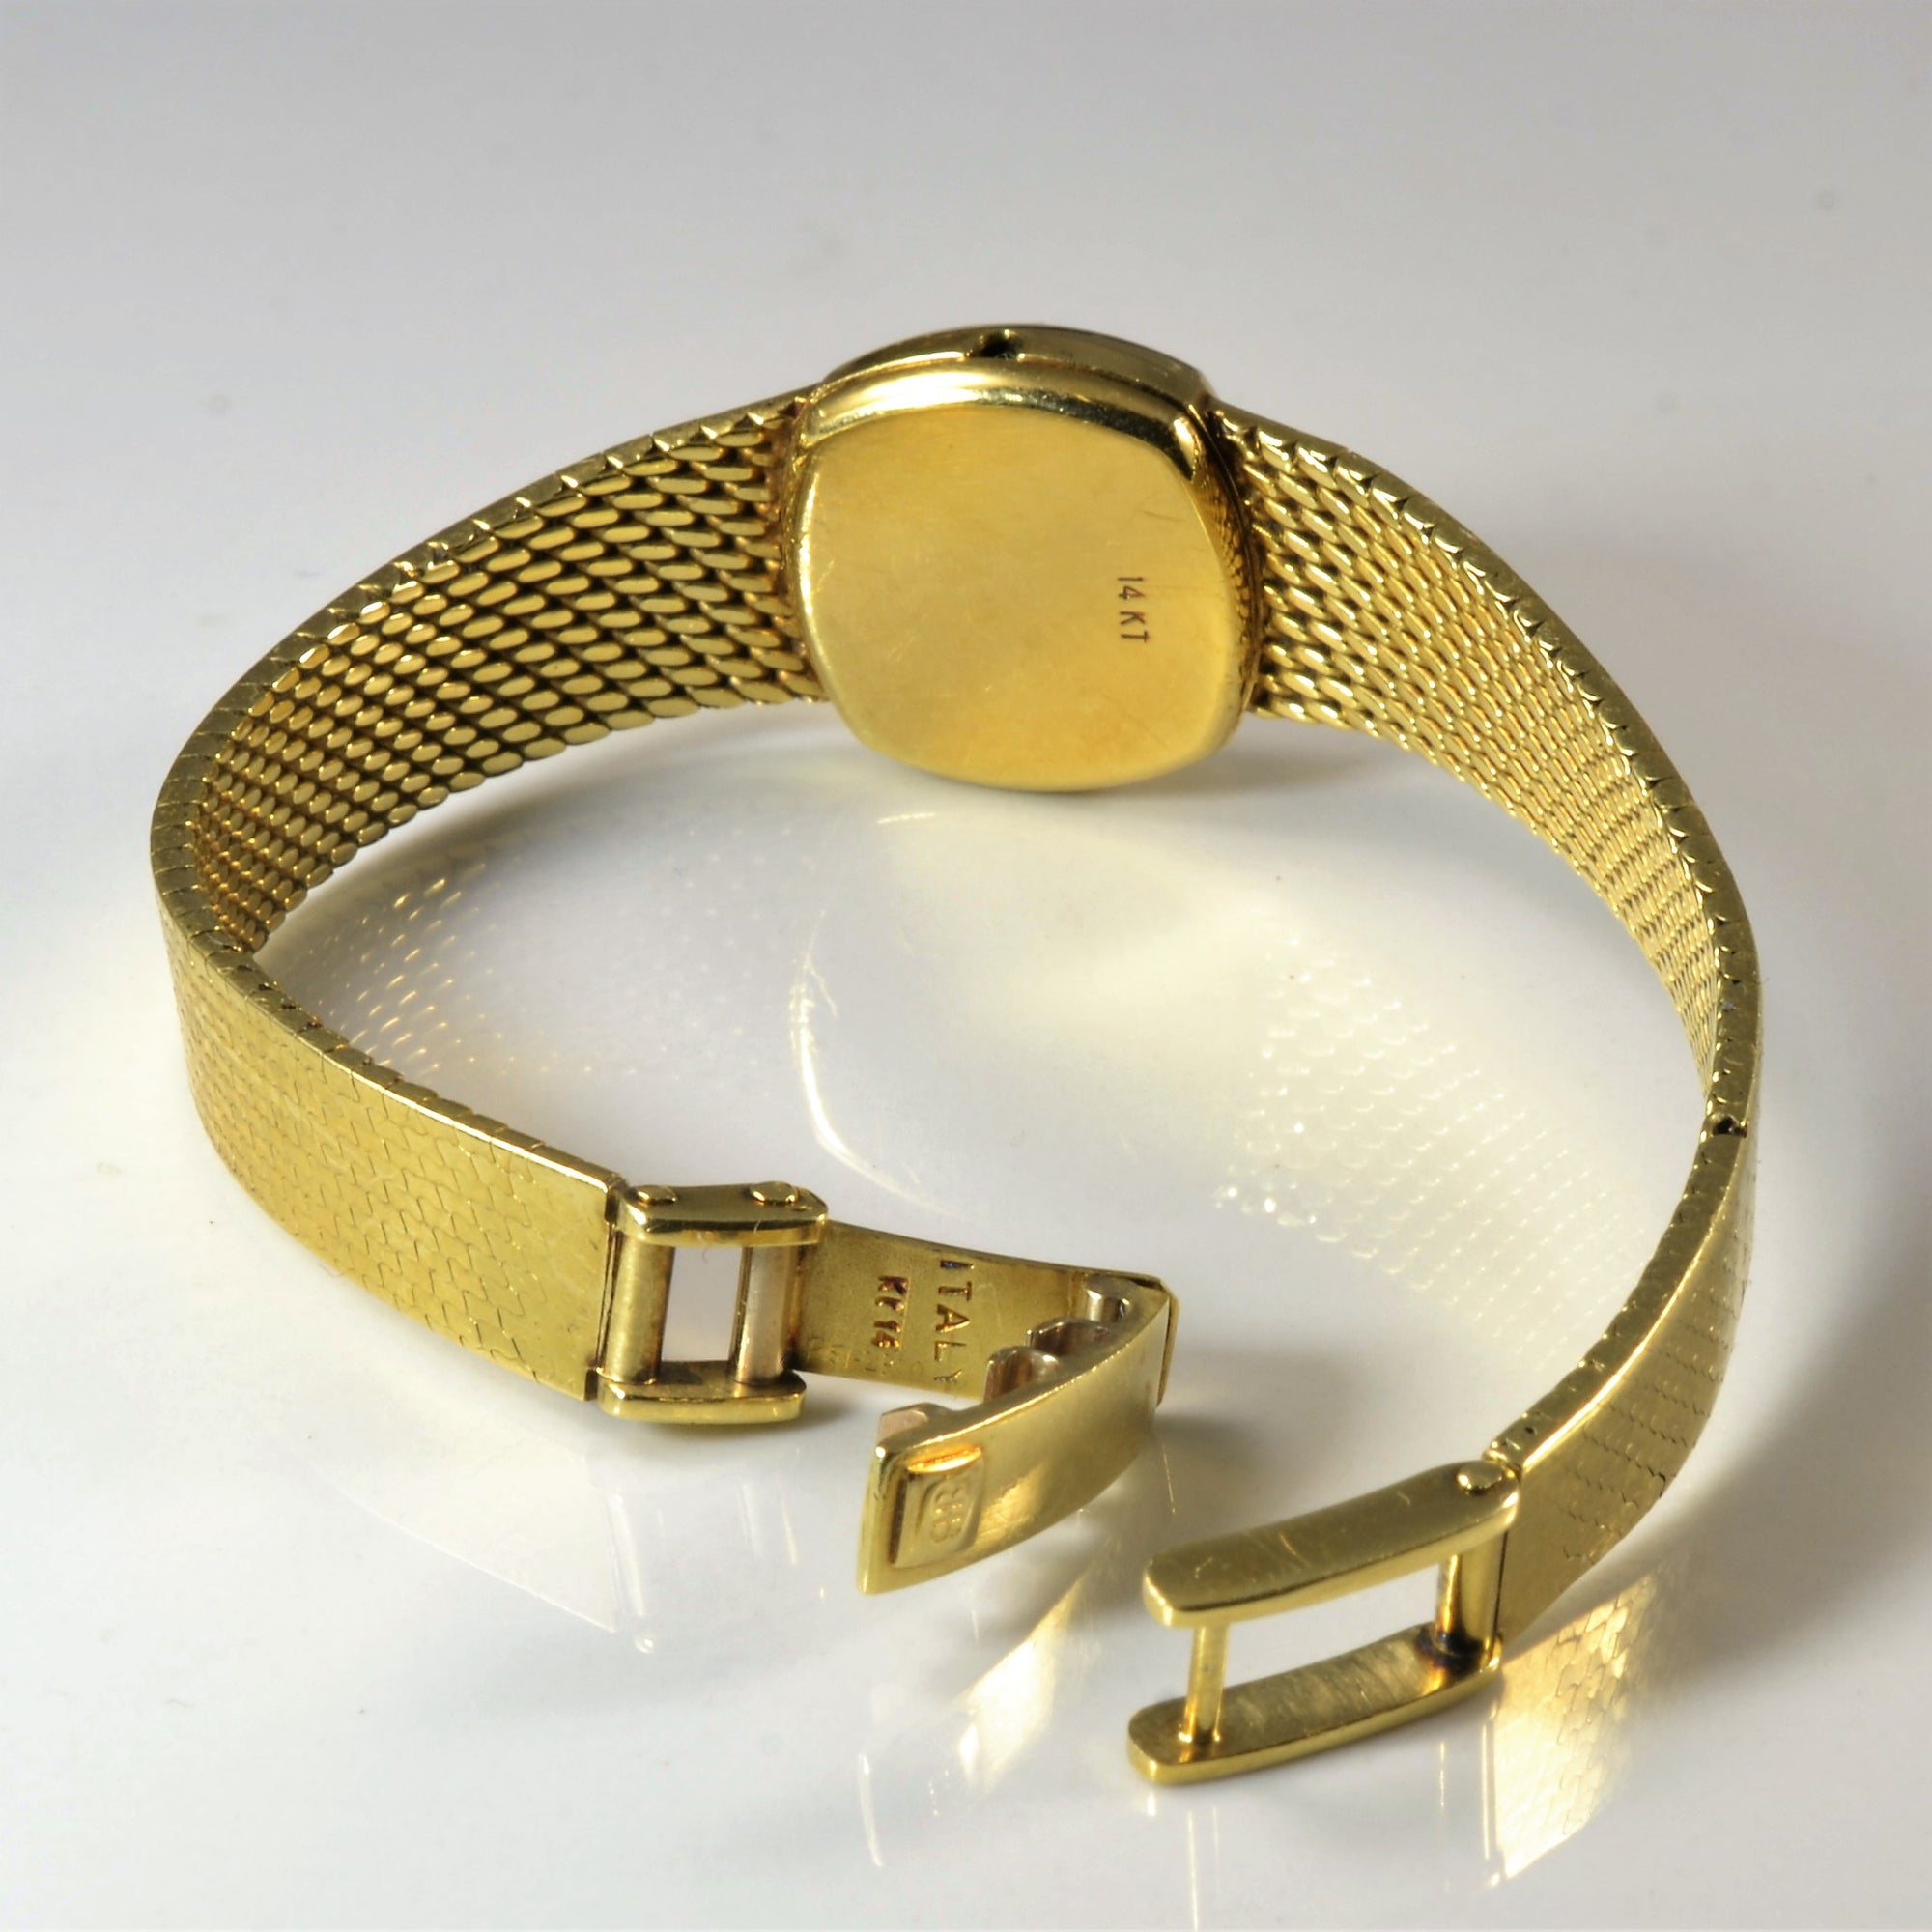 'Birks' 14k gold watch